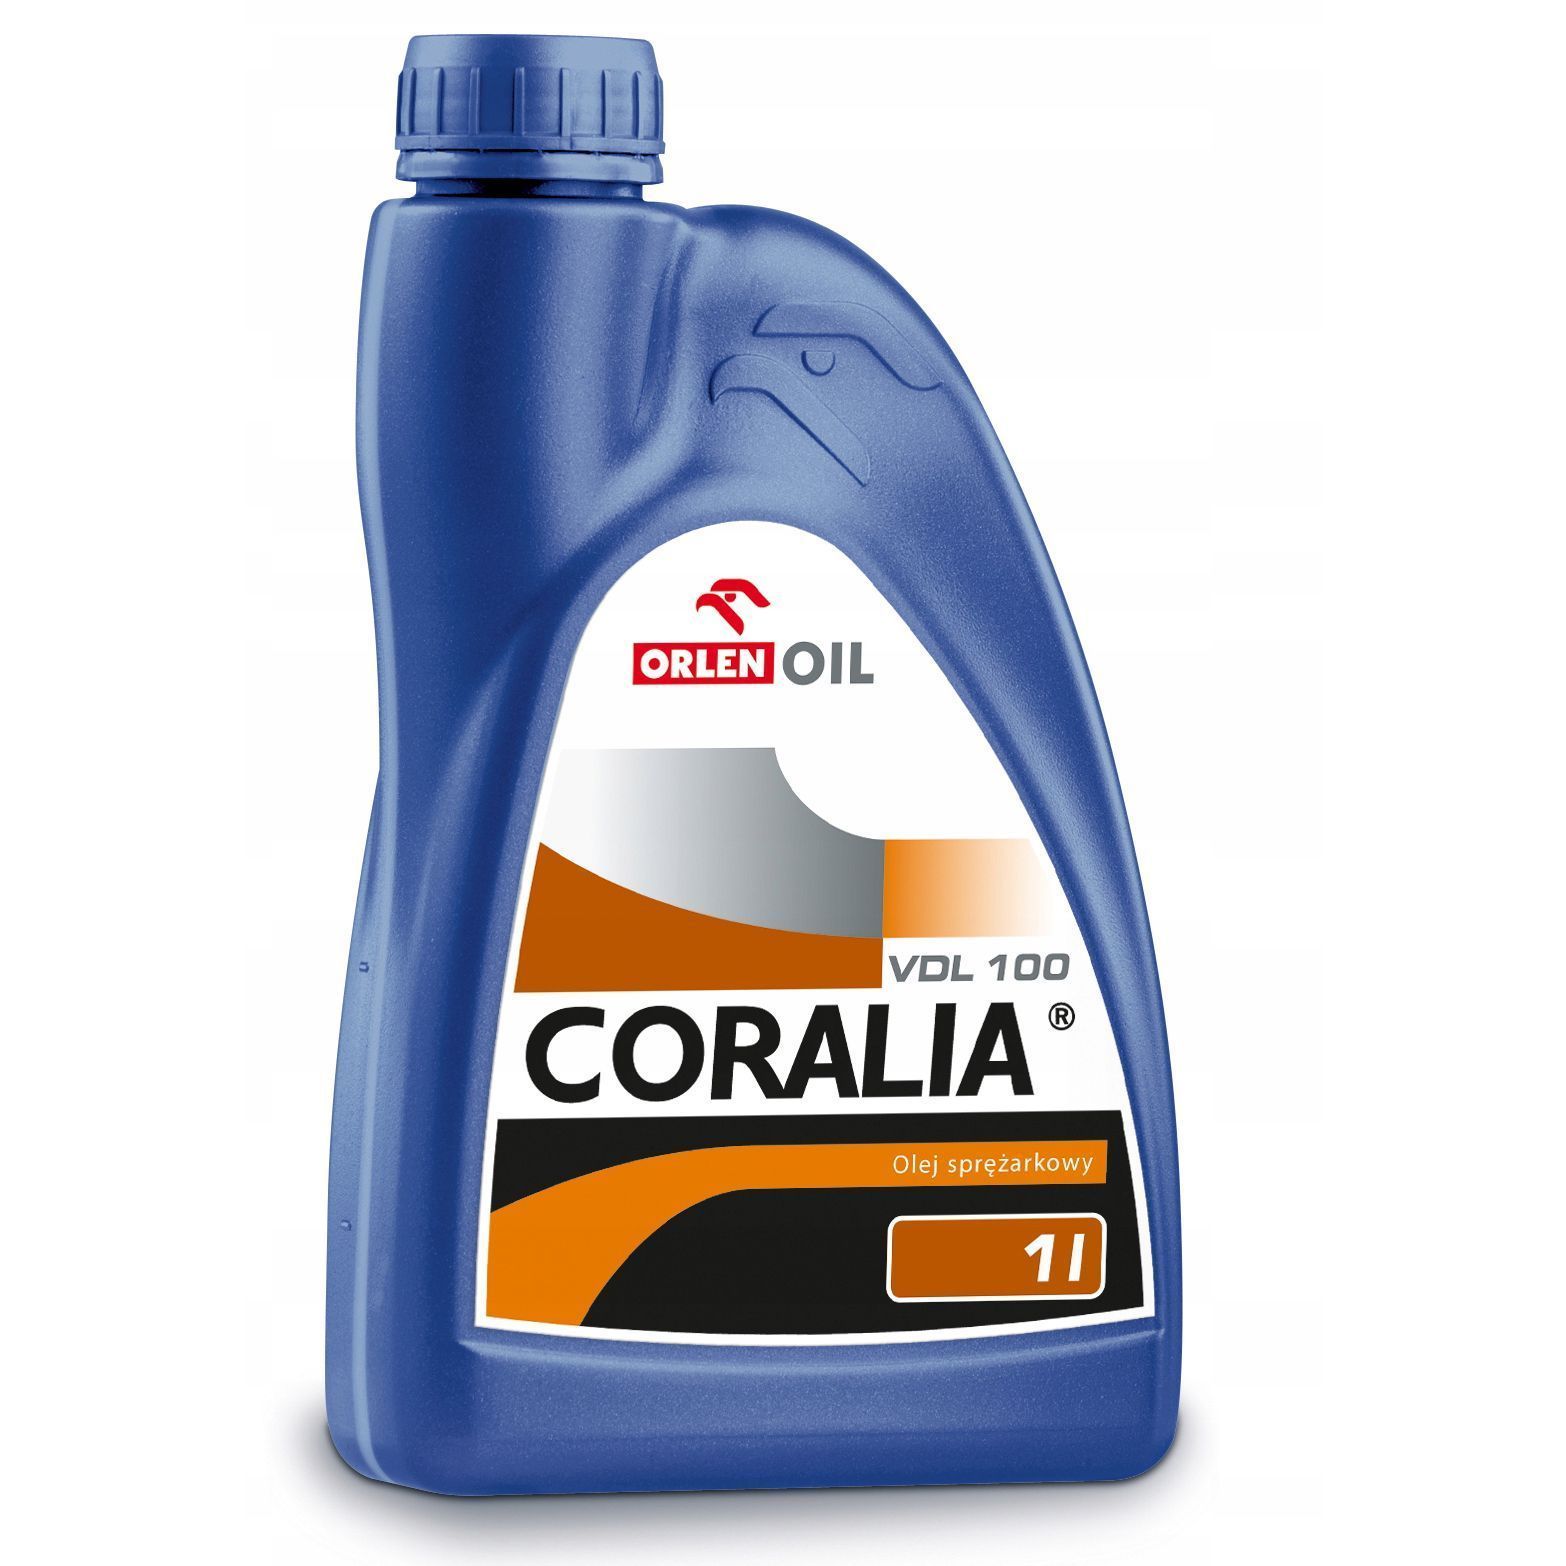 Масло для компрессорного оборудования  Coralia VDL 100 (1л)Orlen Oil 5901001762599